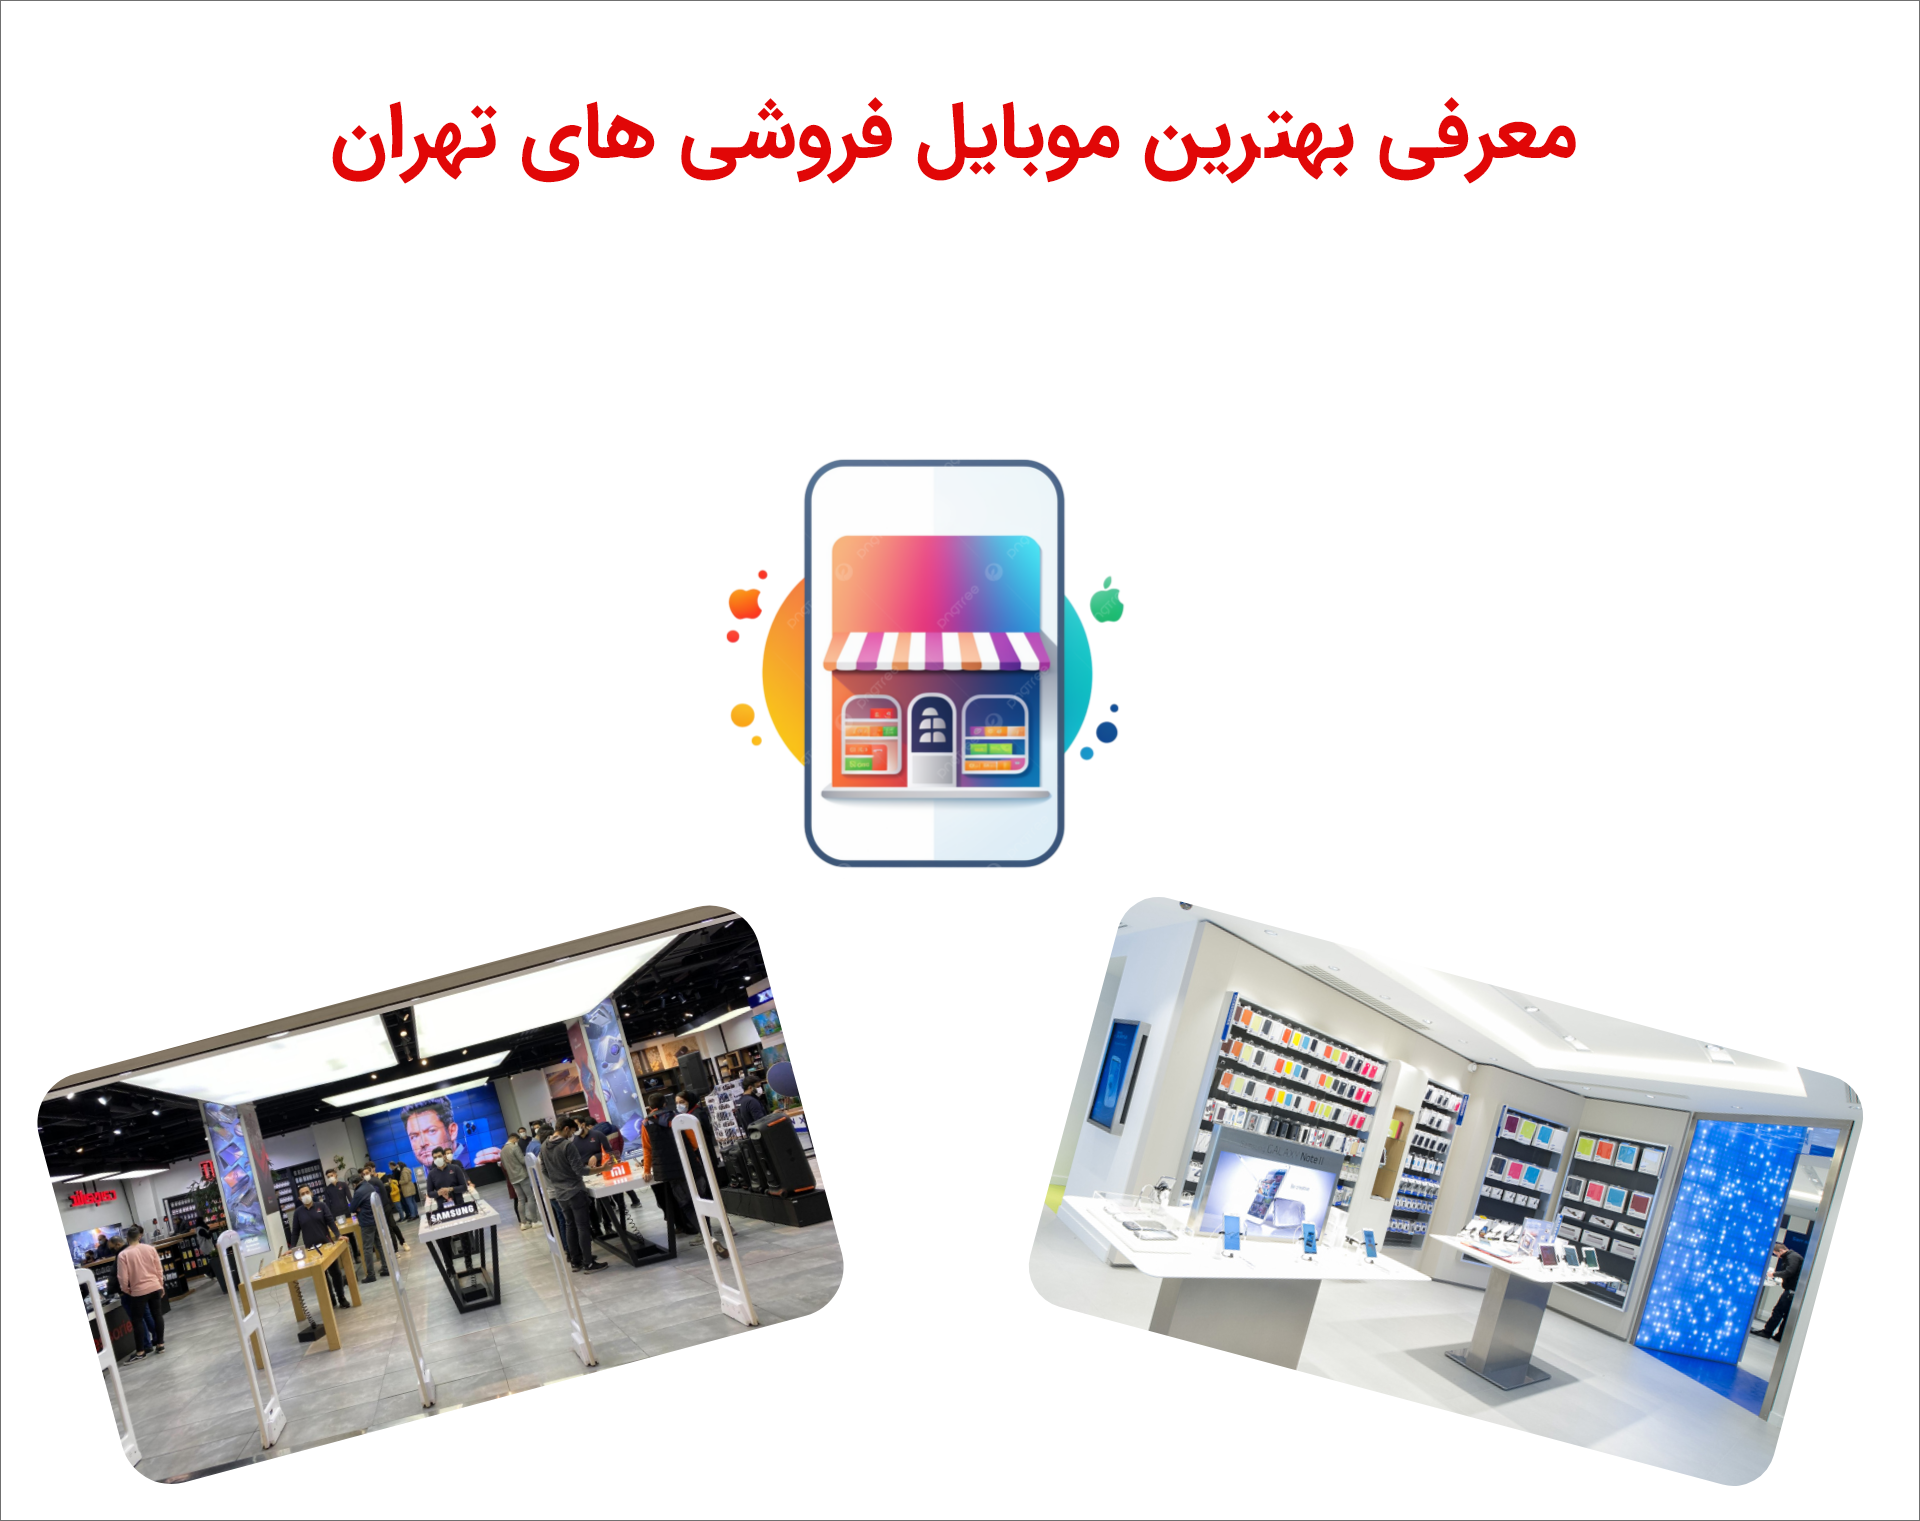 بهترین موبایل فروشی ها در تهران